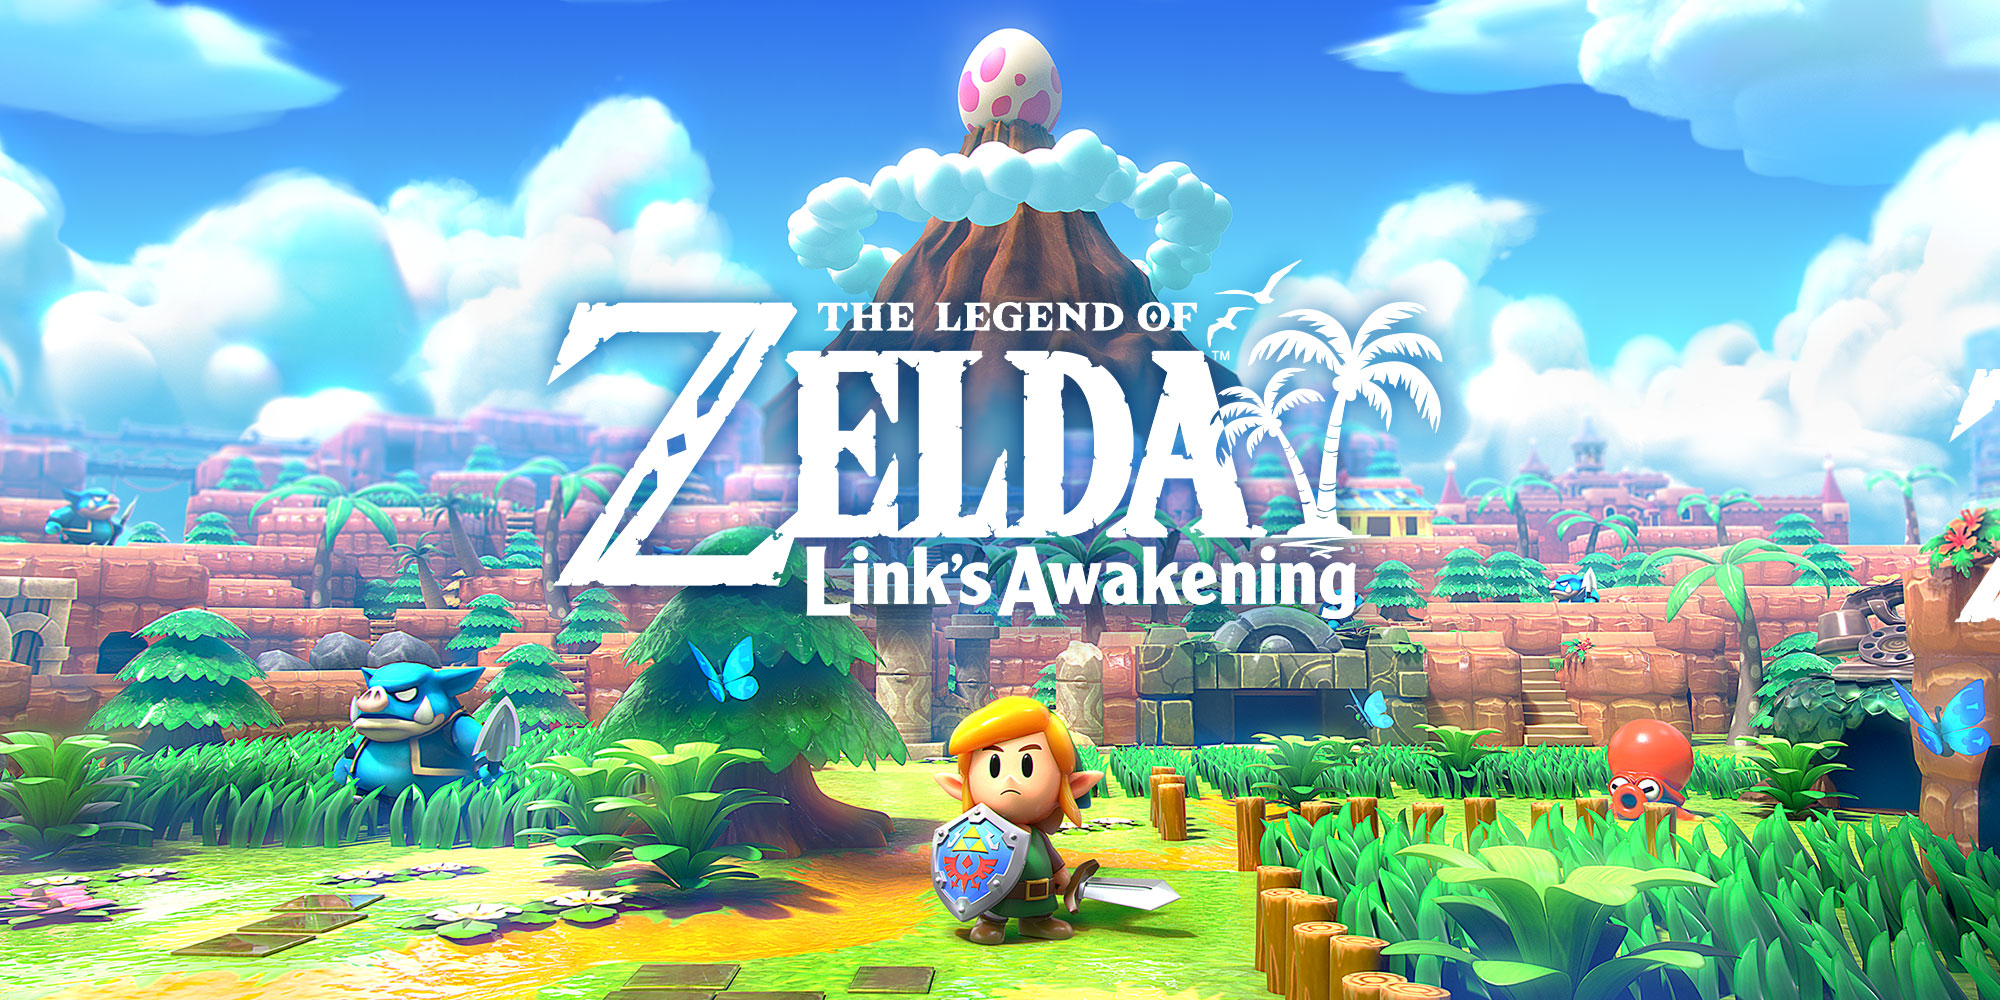 Apprenez-en plus sur The Legend of Zelda: Link's Awakening avec le producteur de la série, Eiji Aonuma !